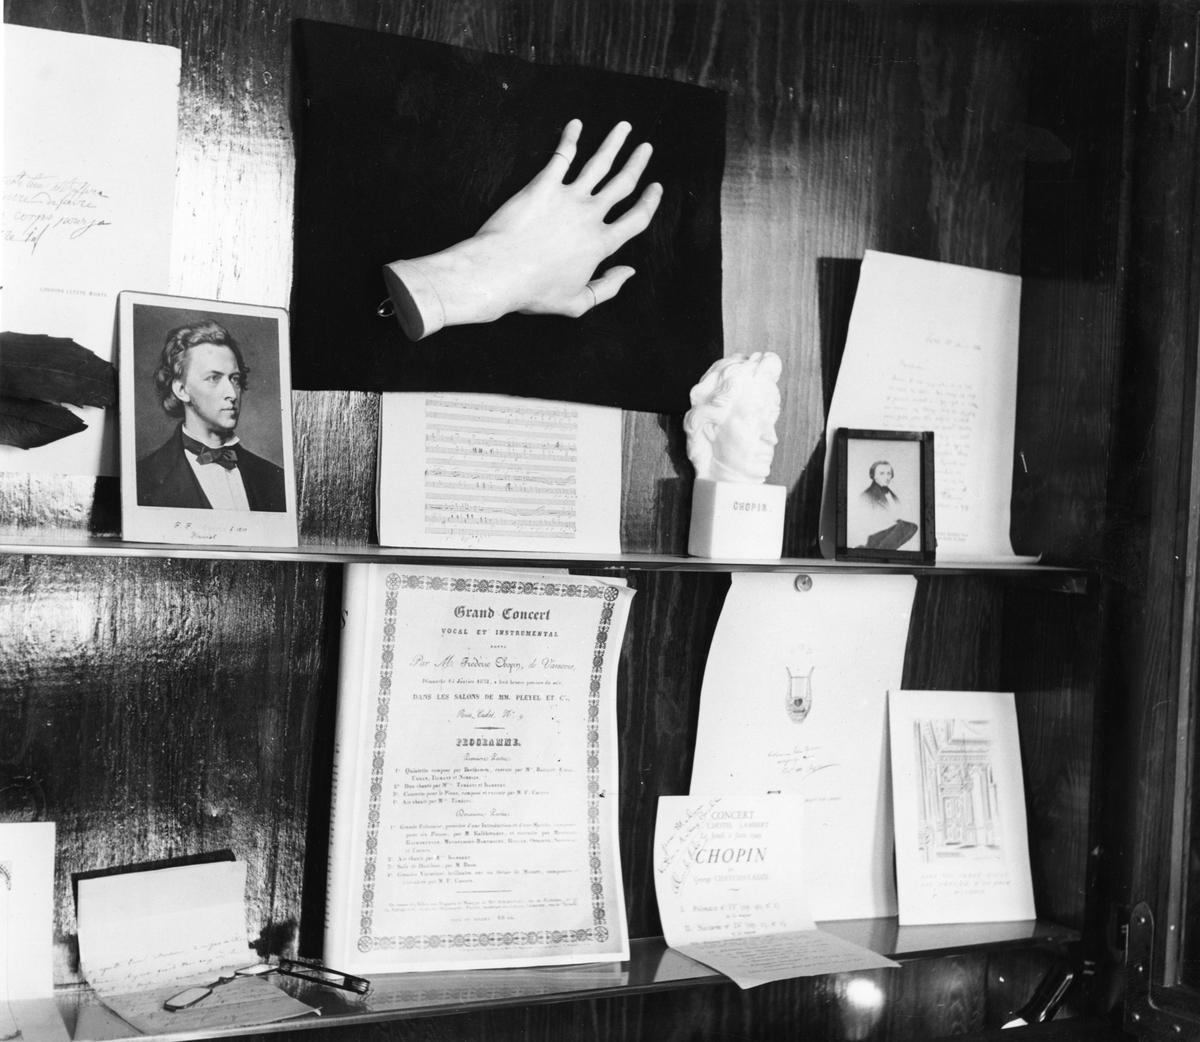 Bilde fra monter i Chopinrommet med diverse bilder og manuskripter. I midten vises en kopi av Chopins venstre hånd.